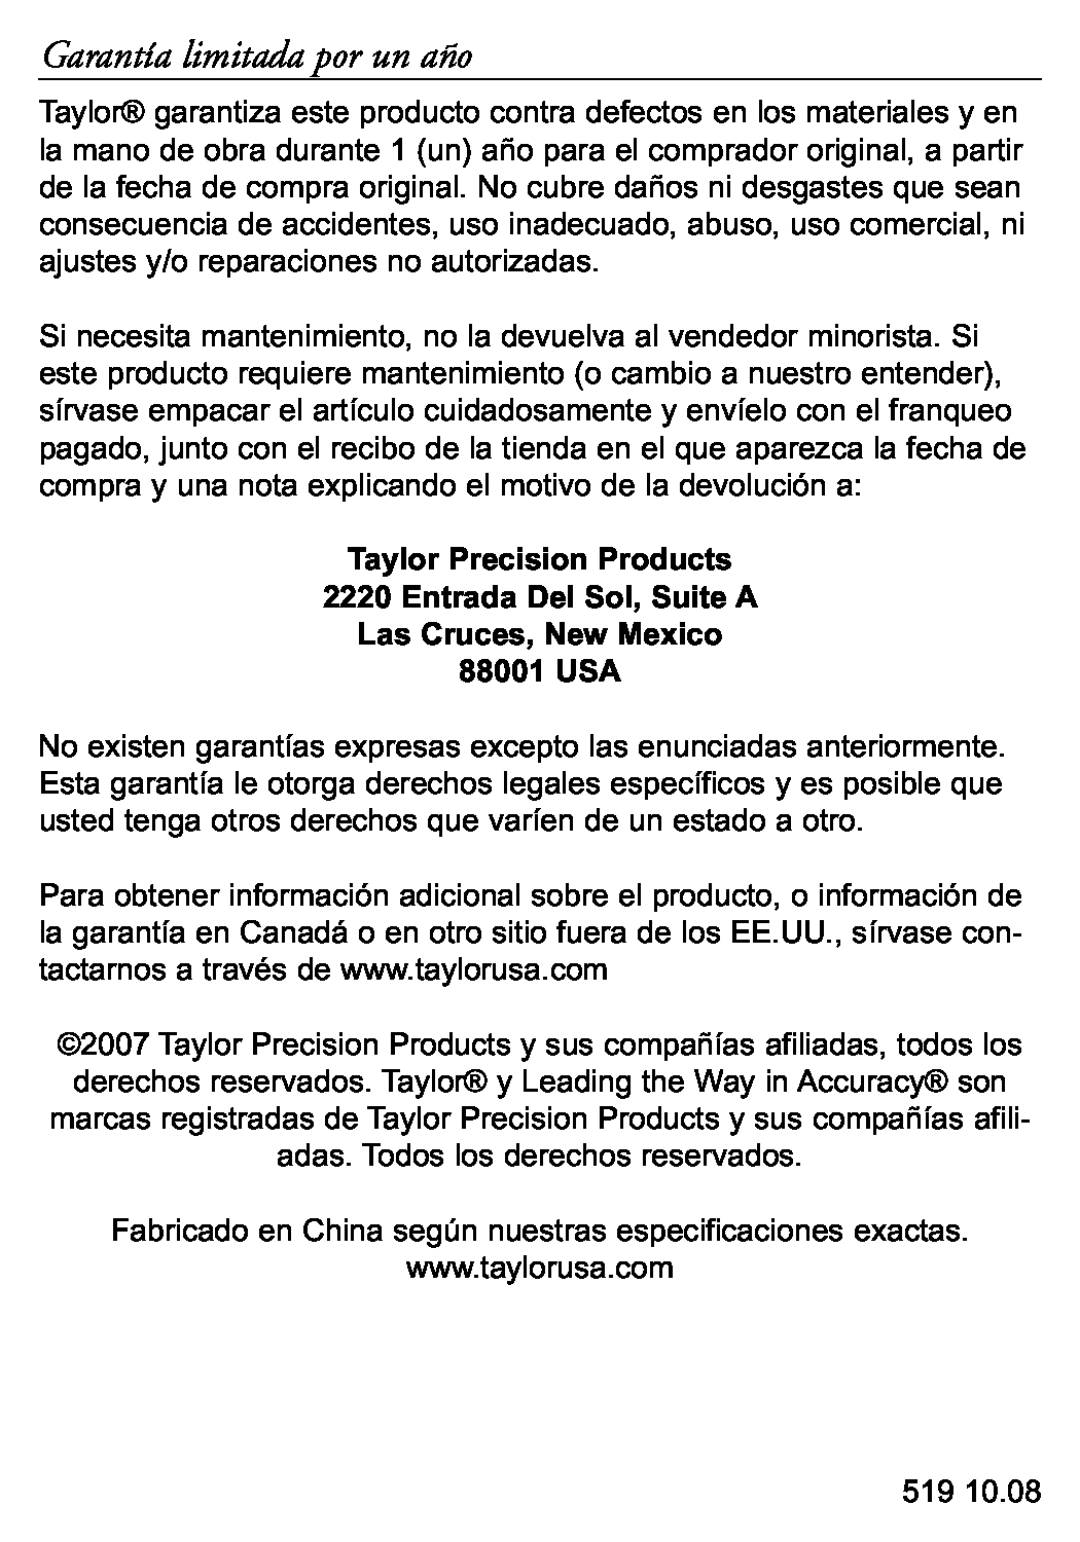 Taylor 519 instruction manual Garantía limitada por un año, Taylor Precision Products, Entrada Del Sol, Suite A 